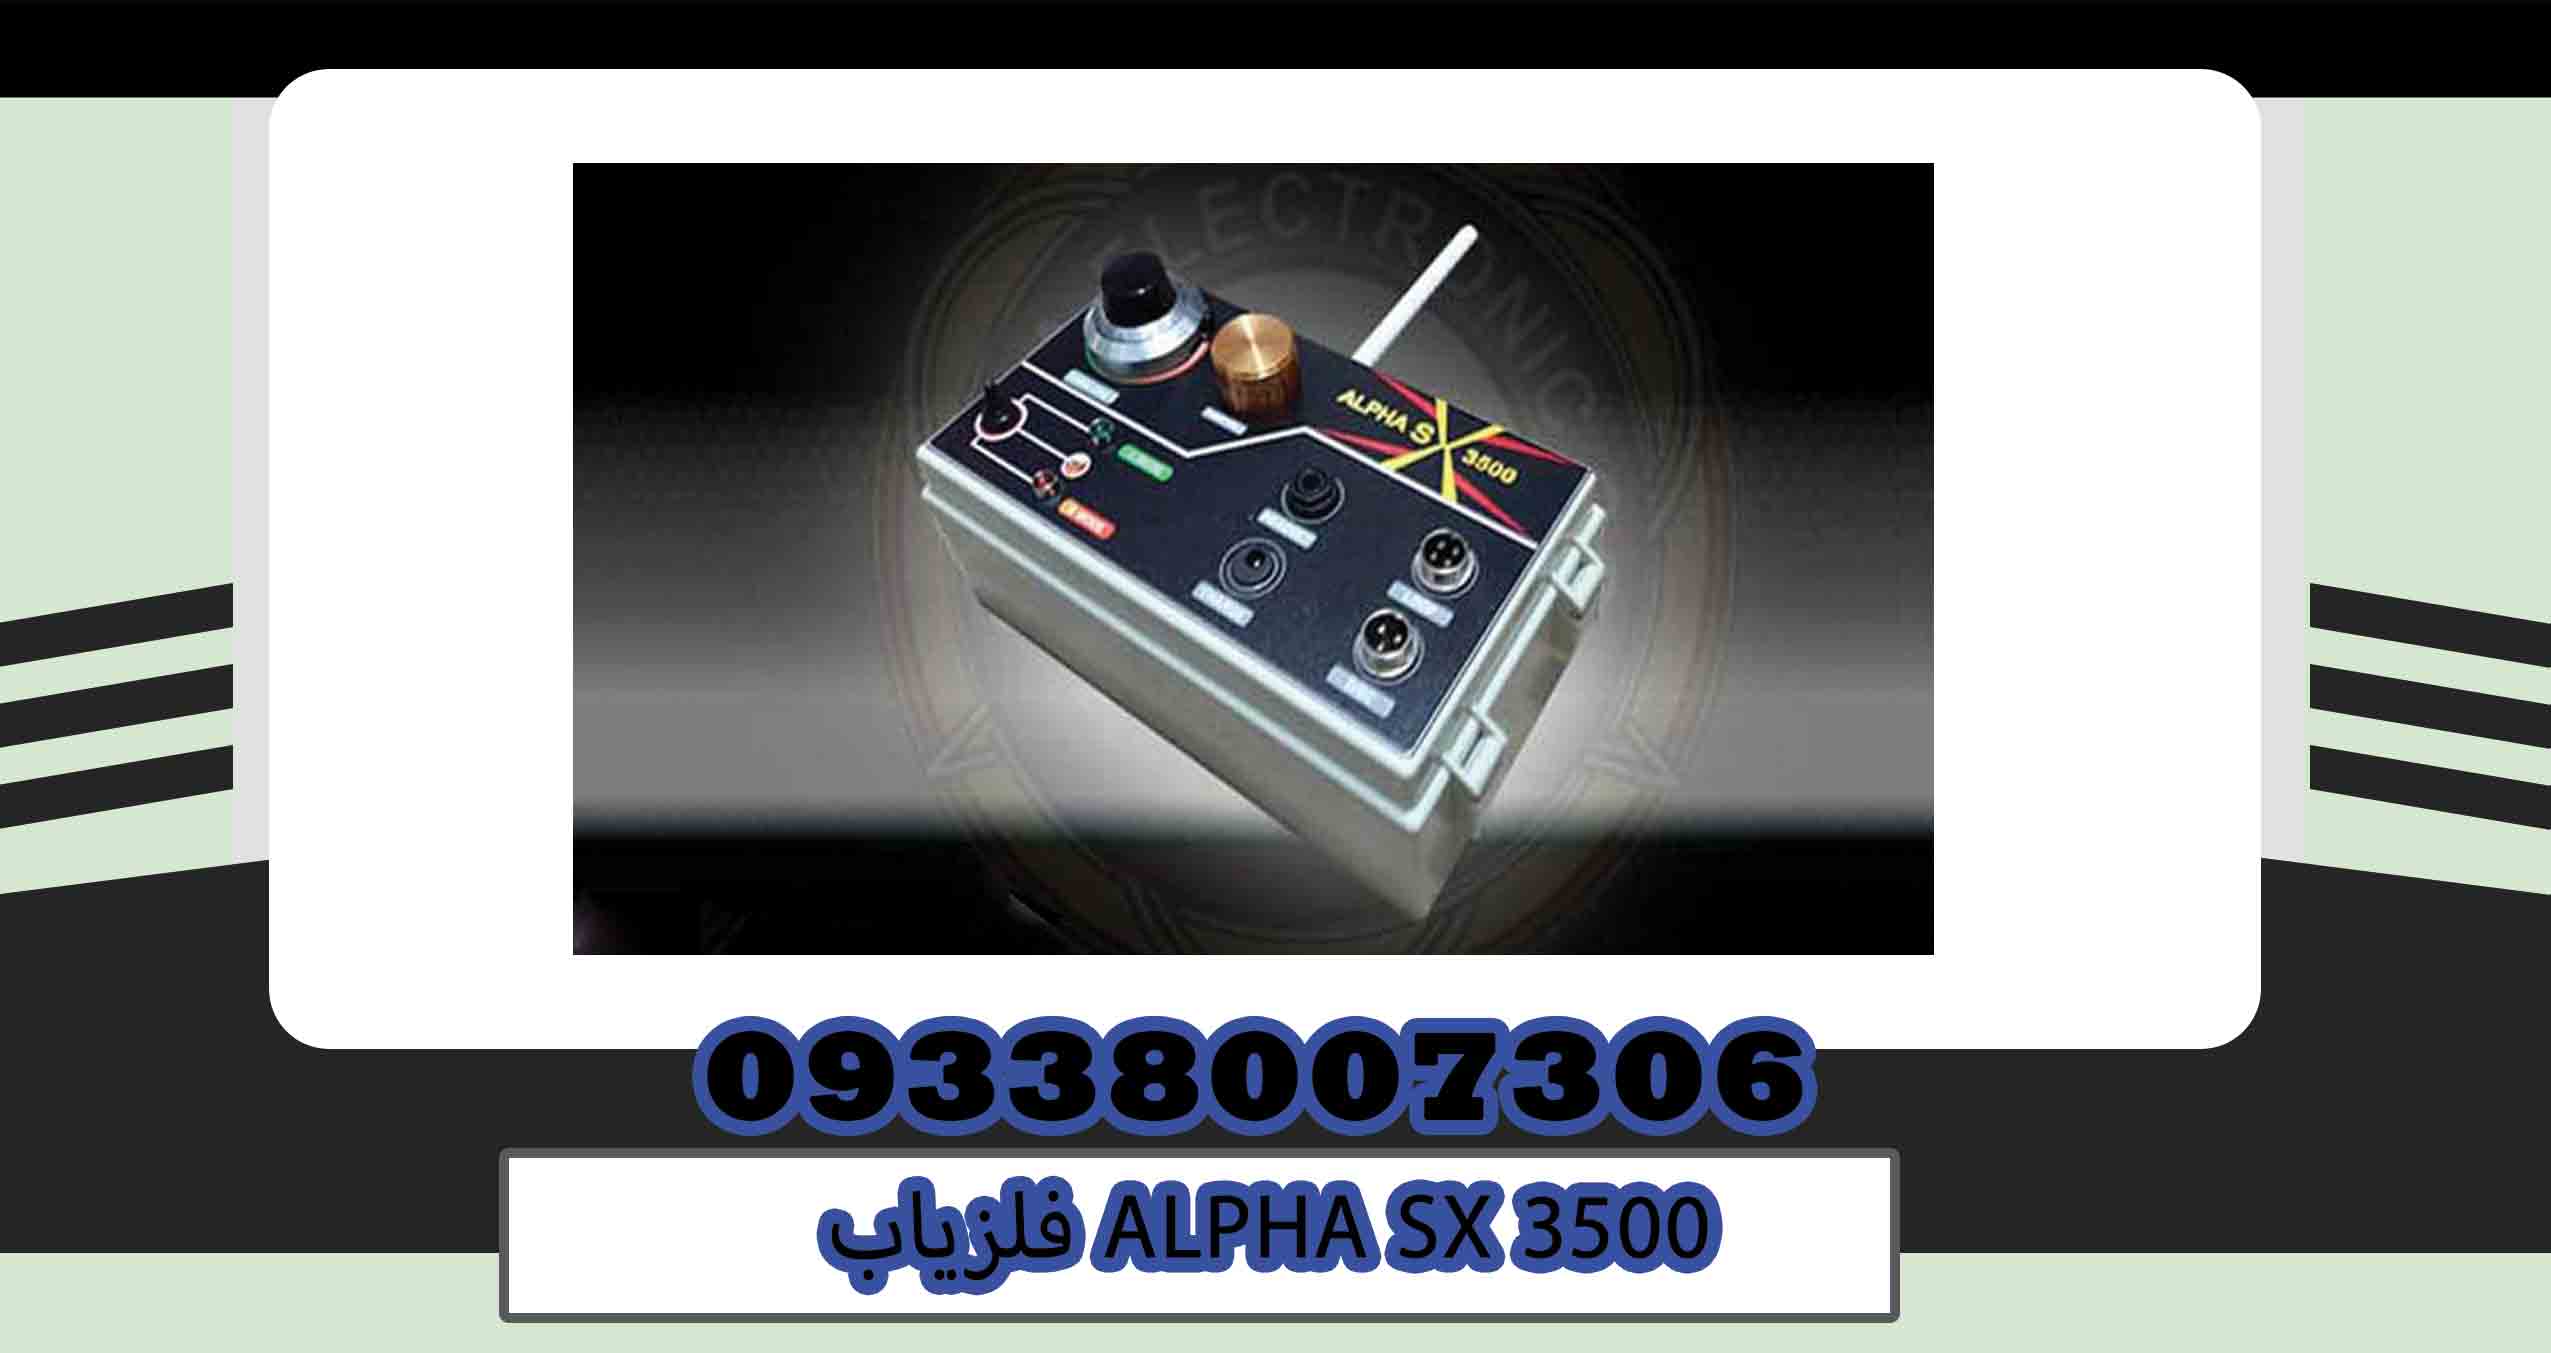 ALPHA SX 3500